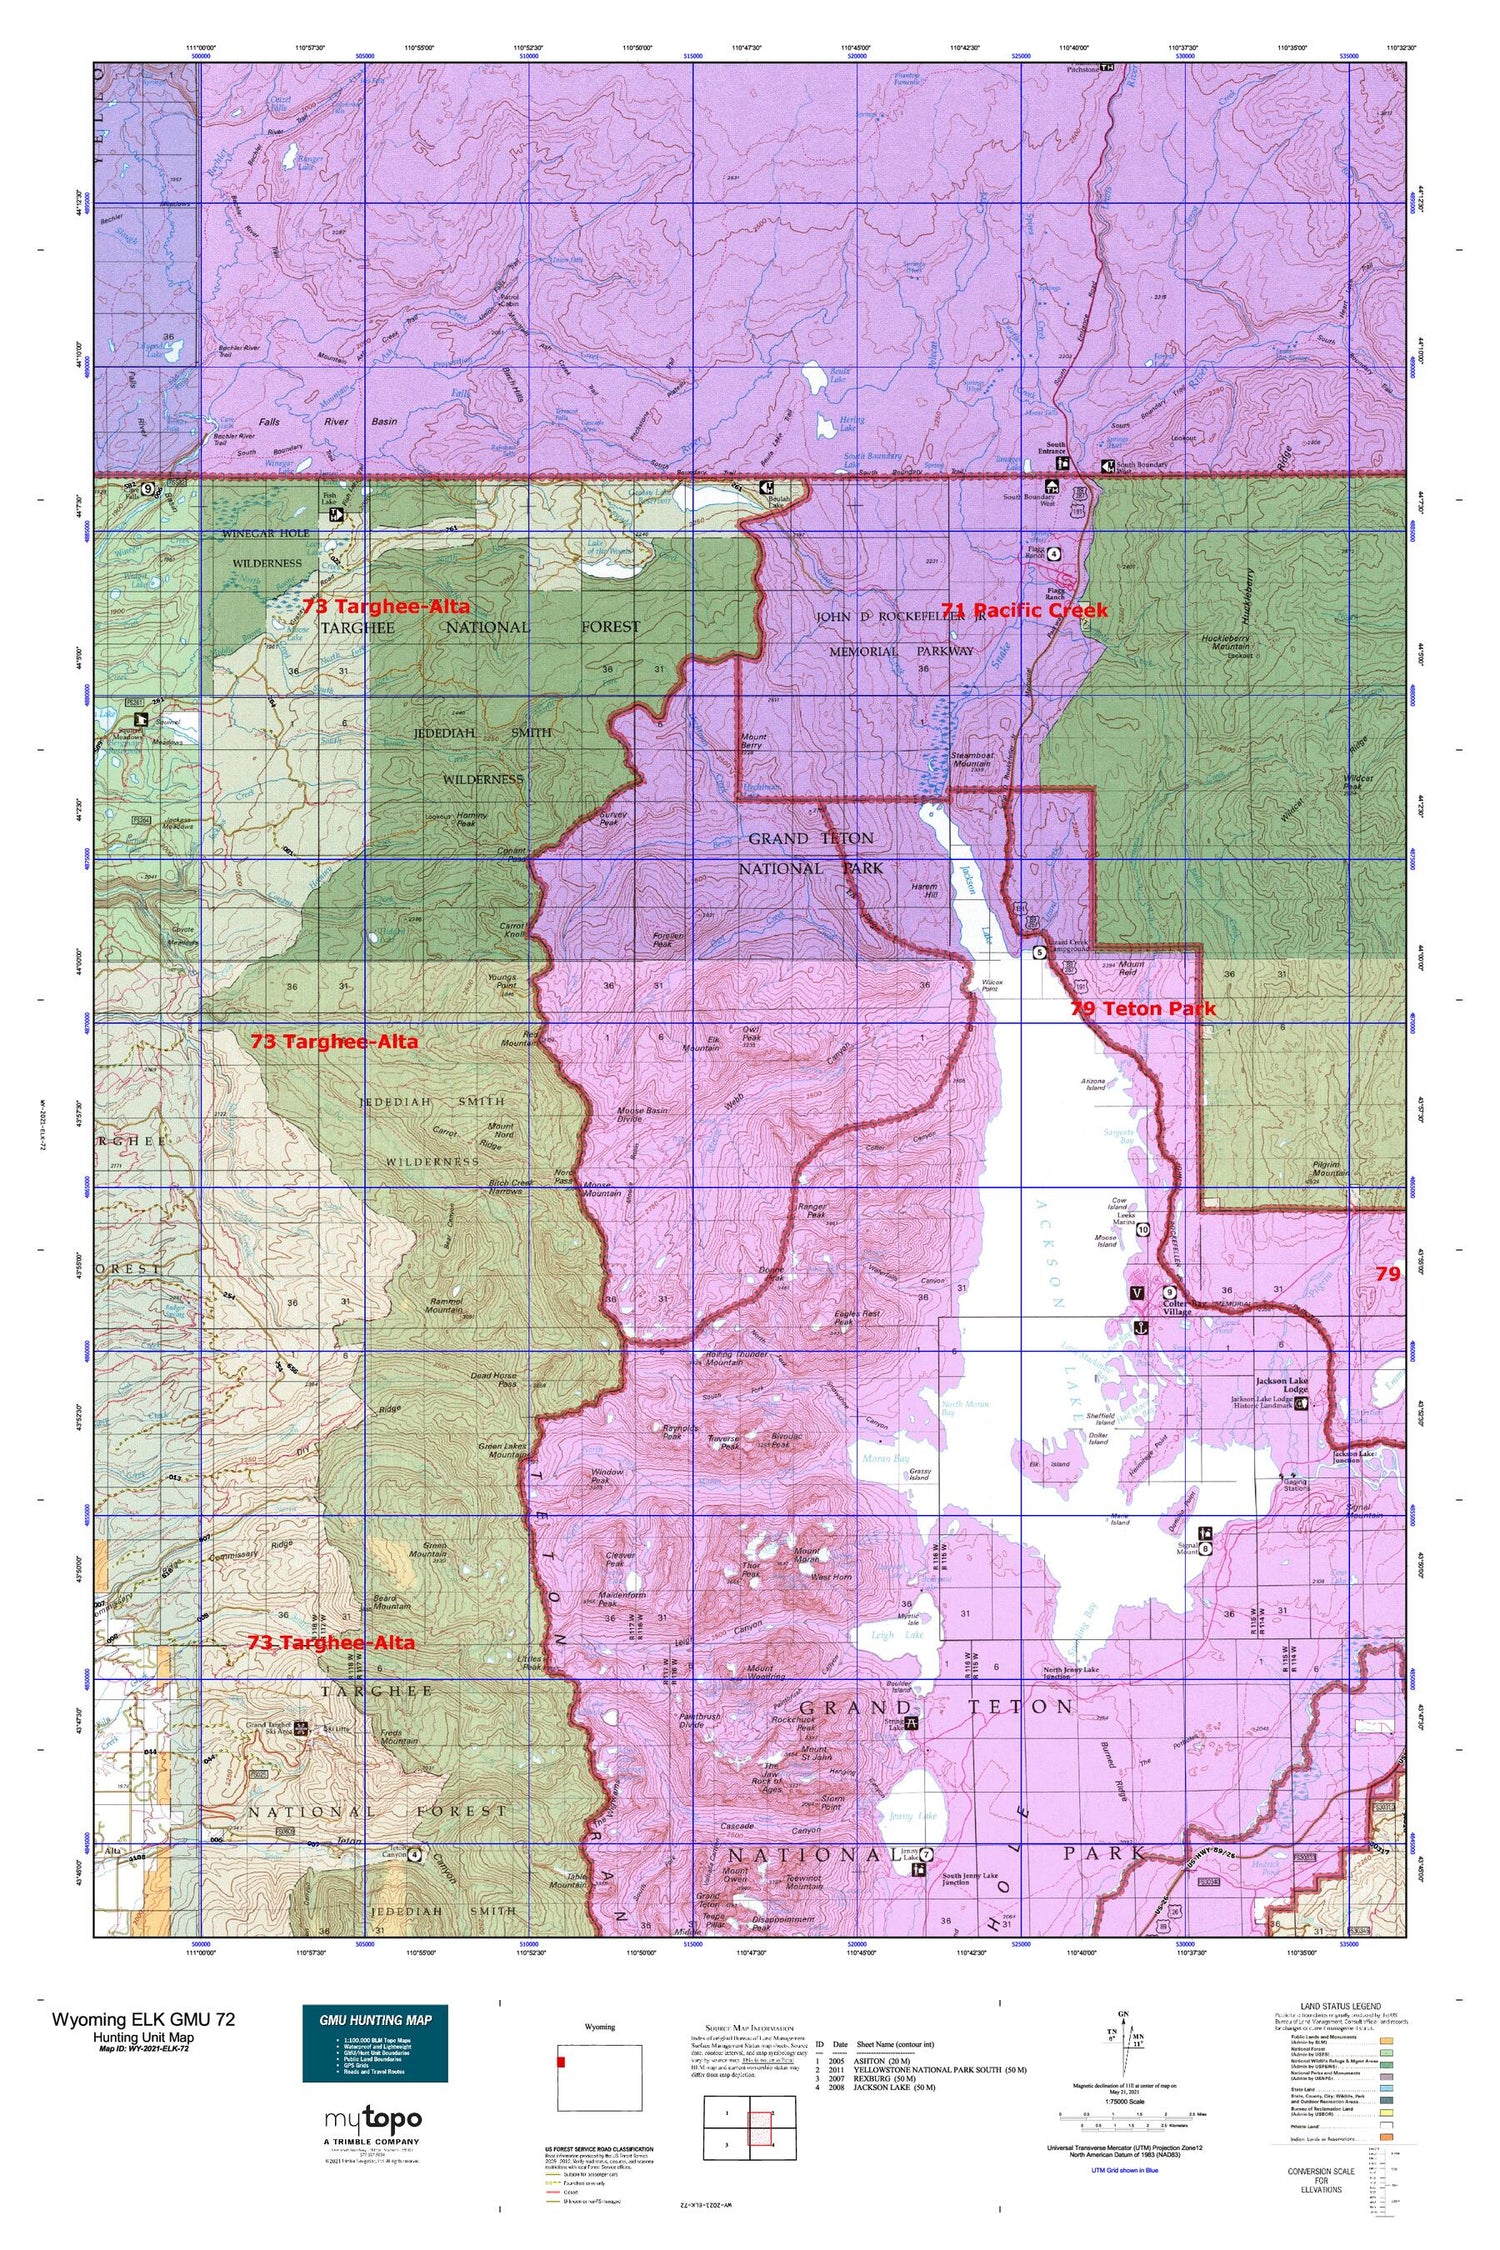 Wyoming Elk GMU 72 Map Image